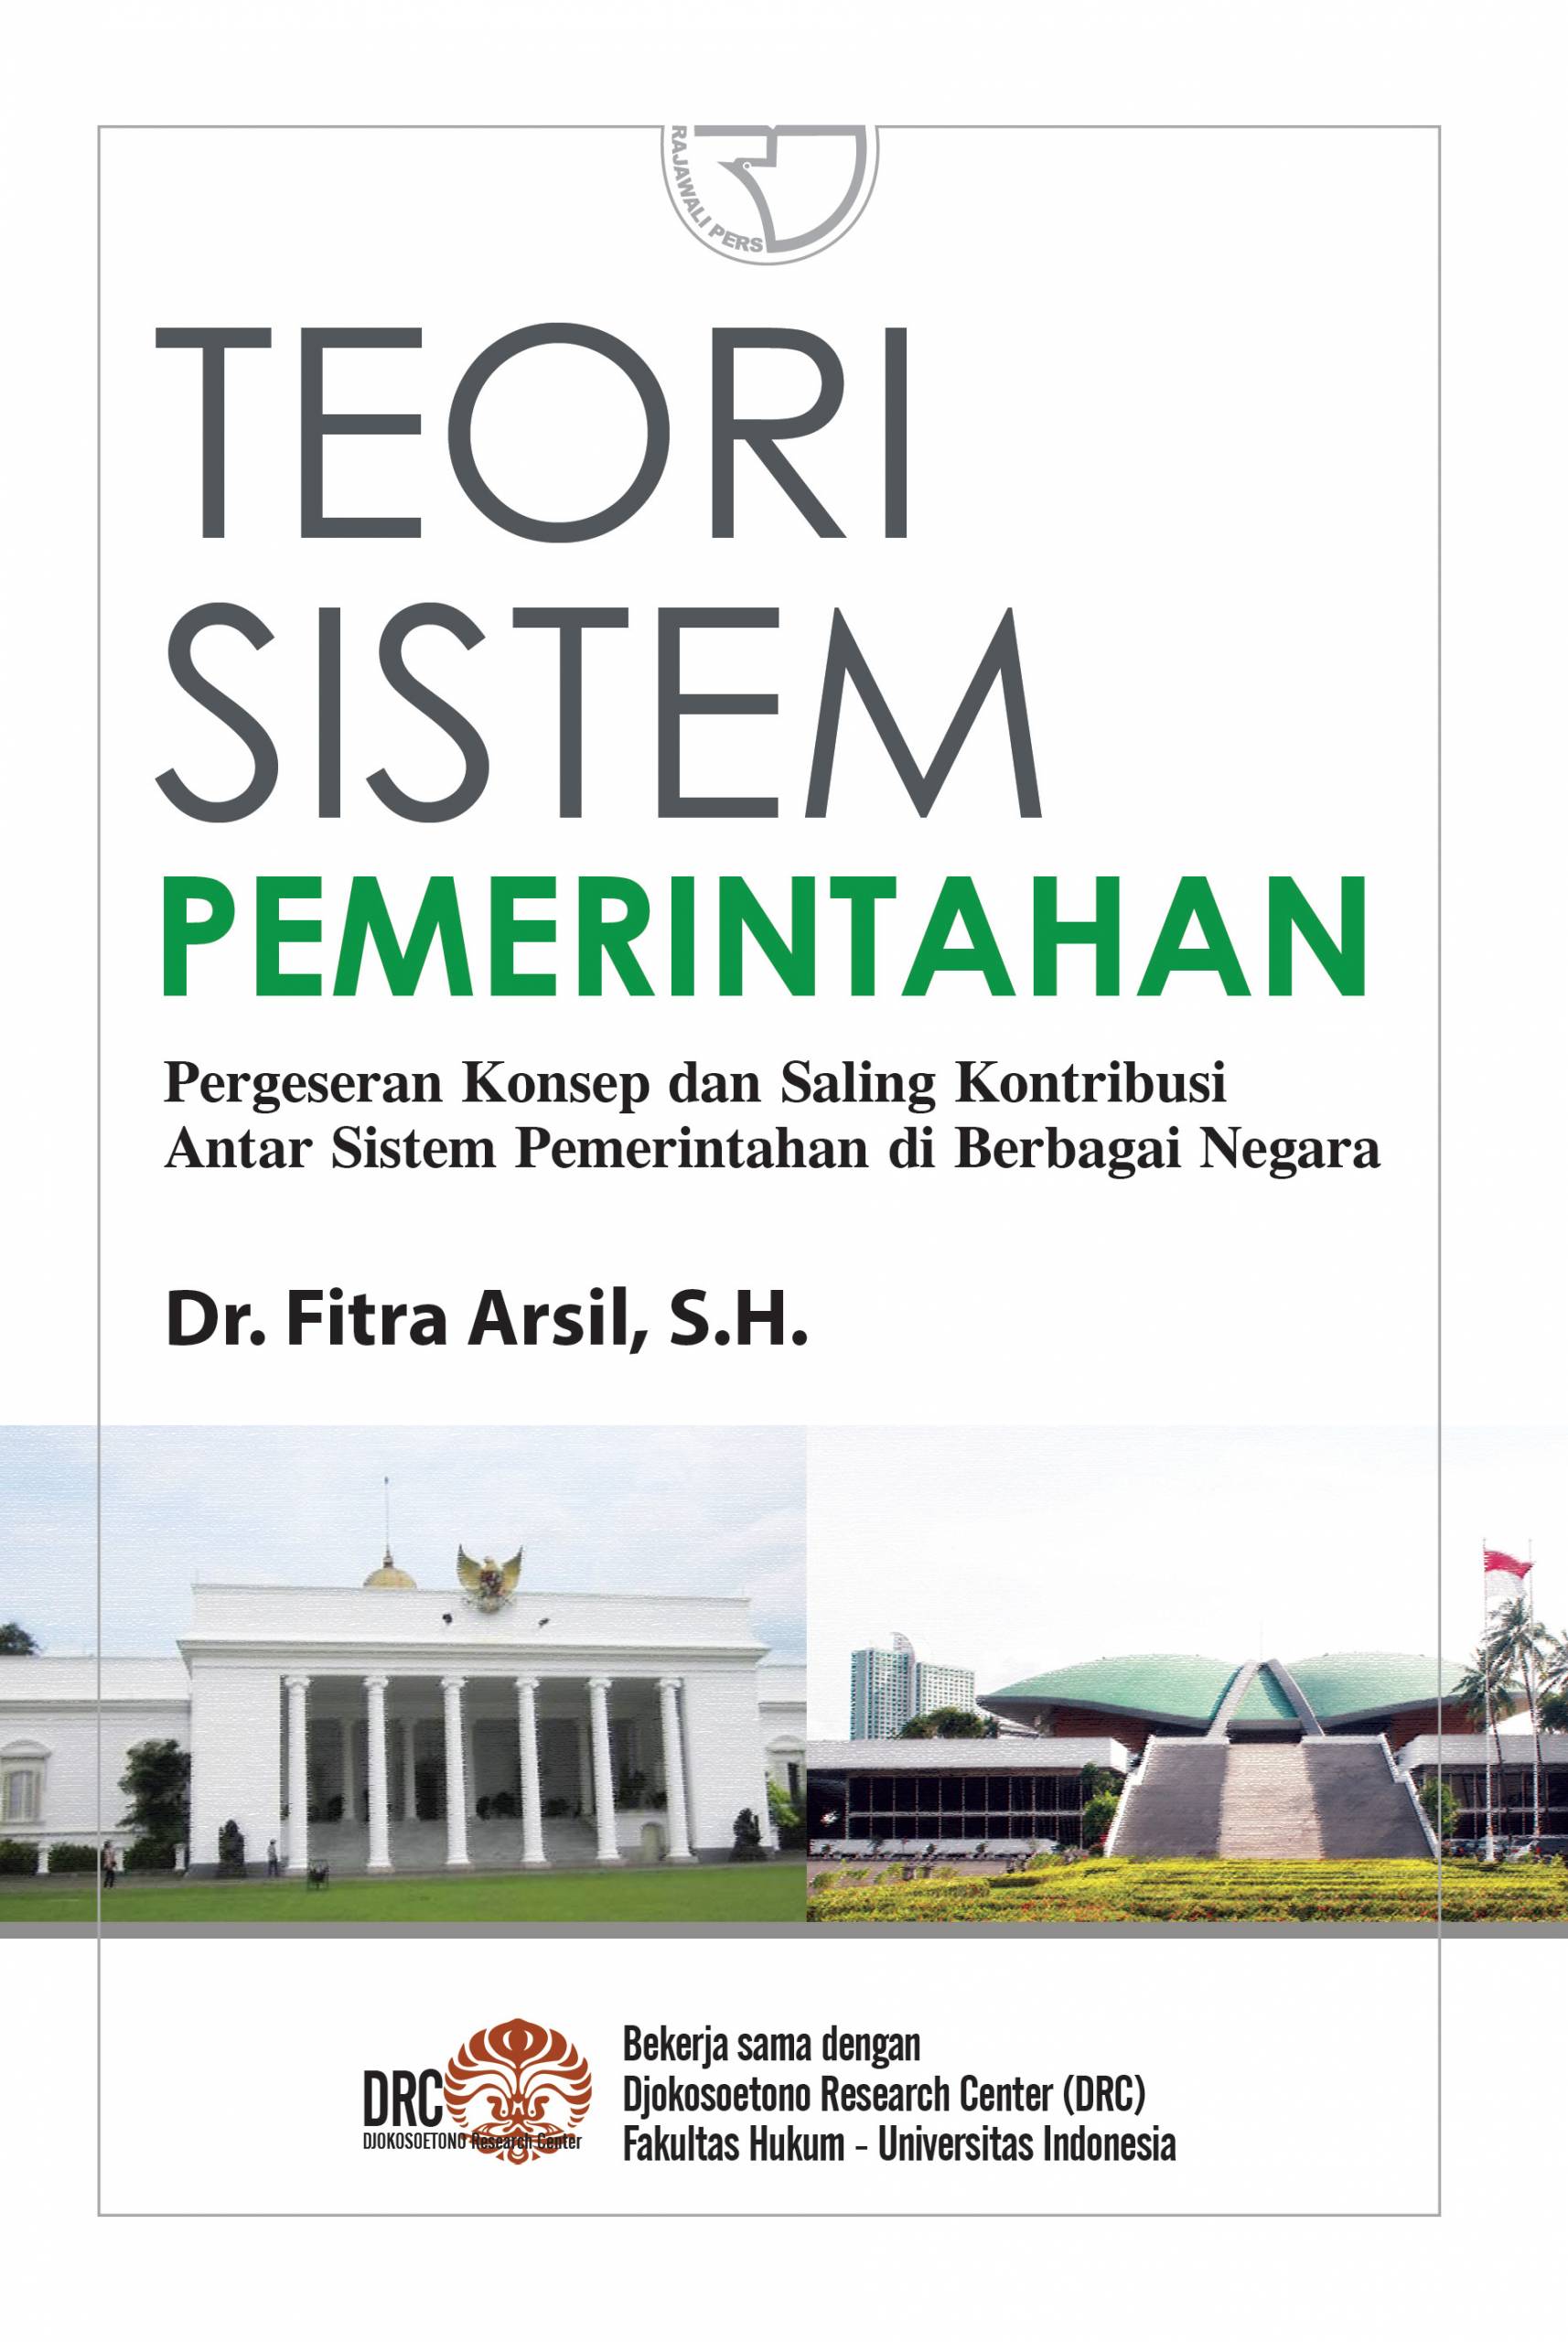 Teori sistem pemerintahan :  pergeseran konsep dan saling kontribusi antar sistem pemerintahan di berbagai negara